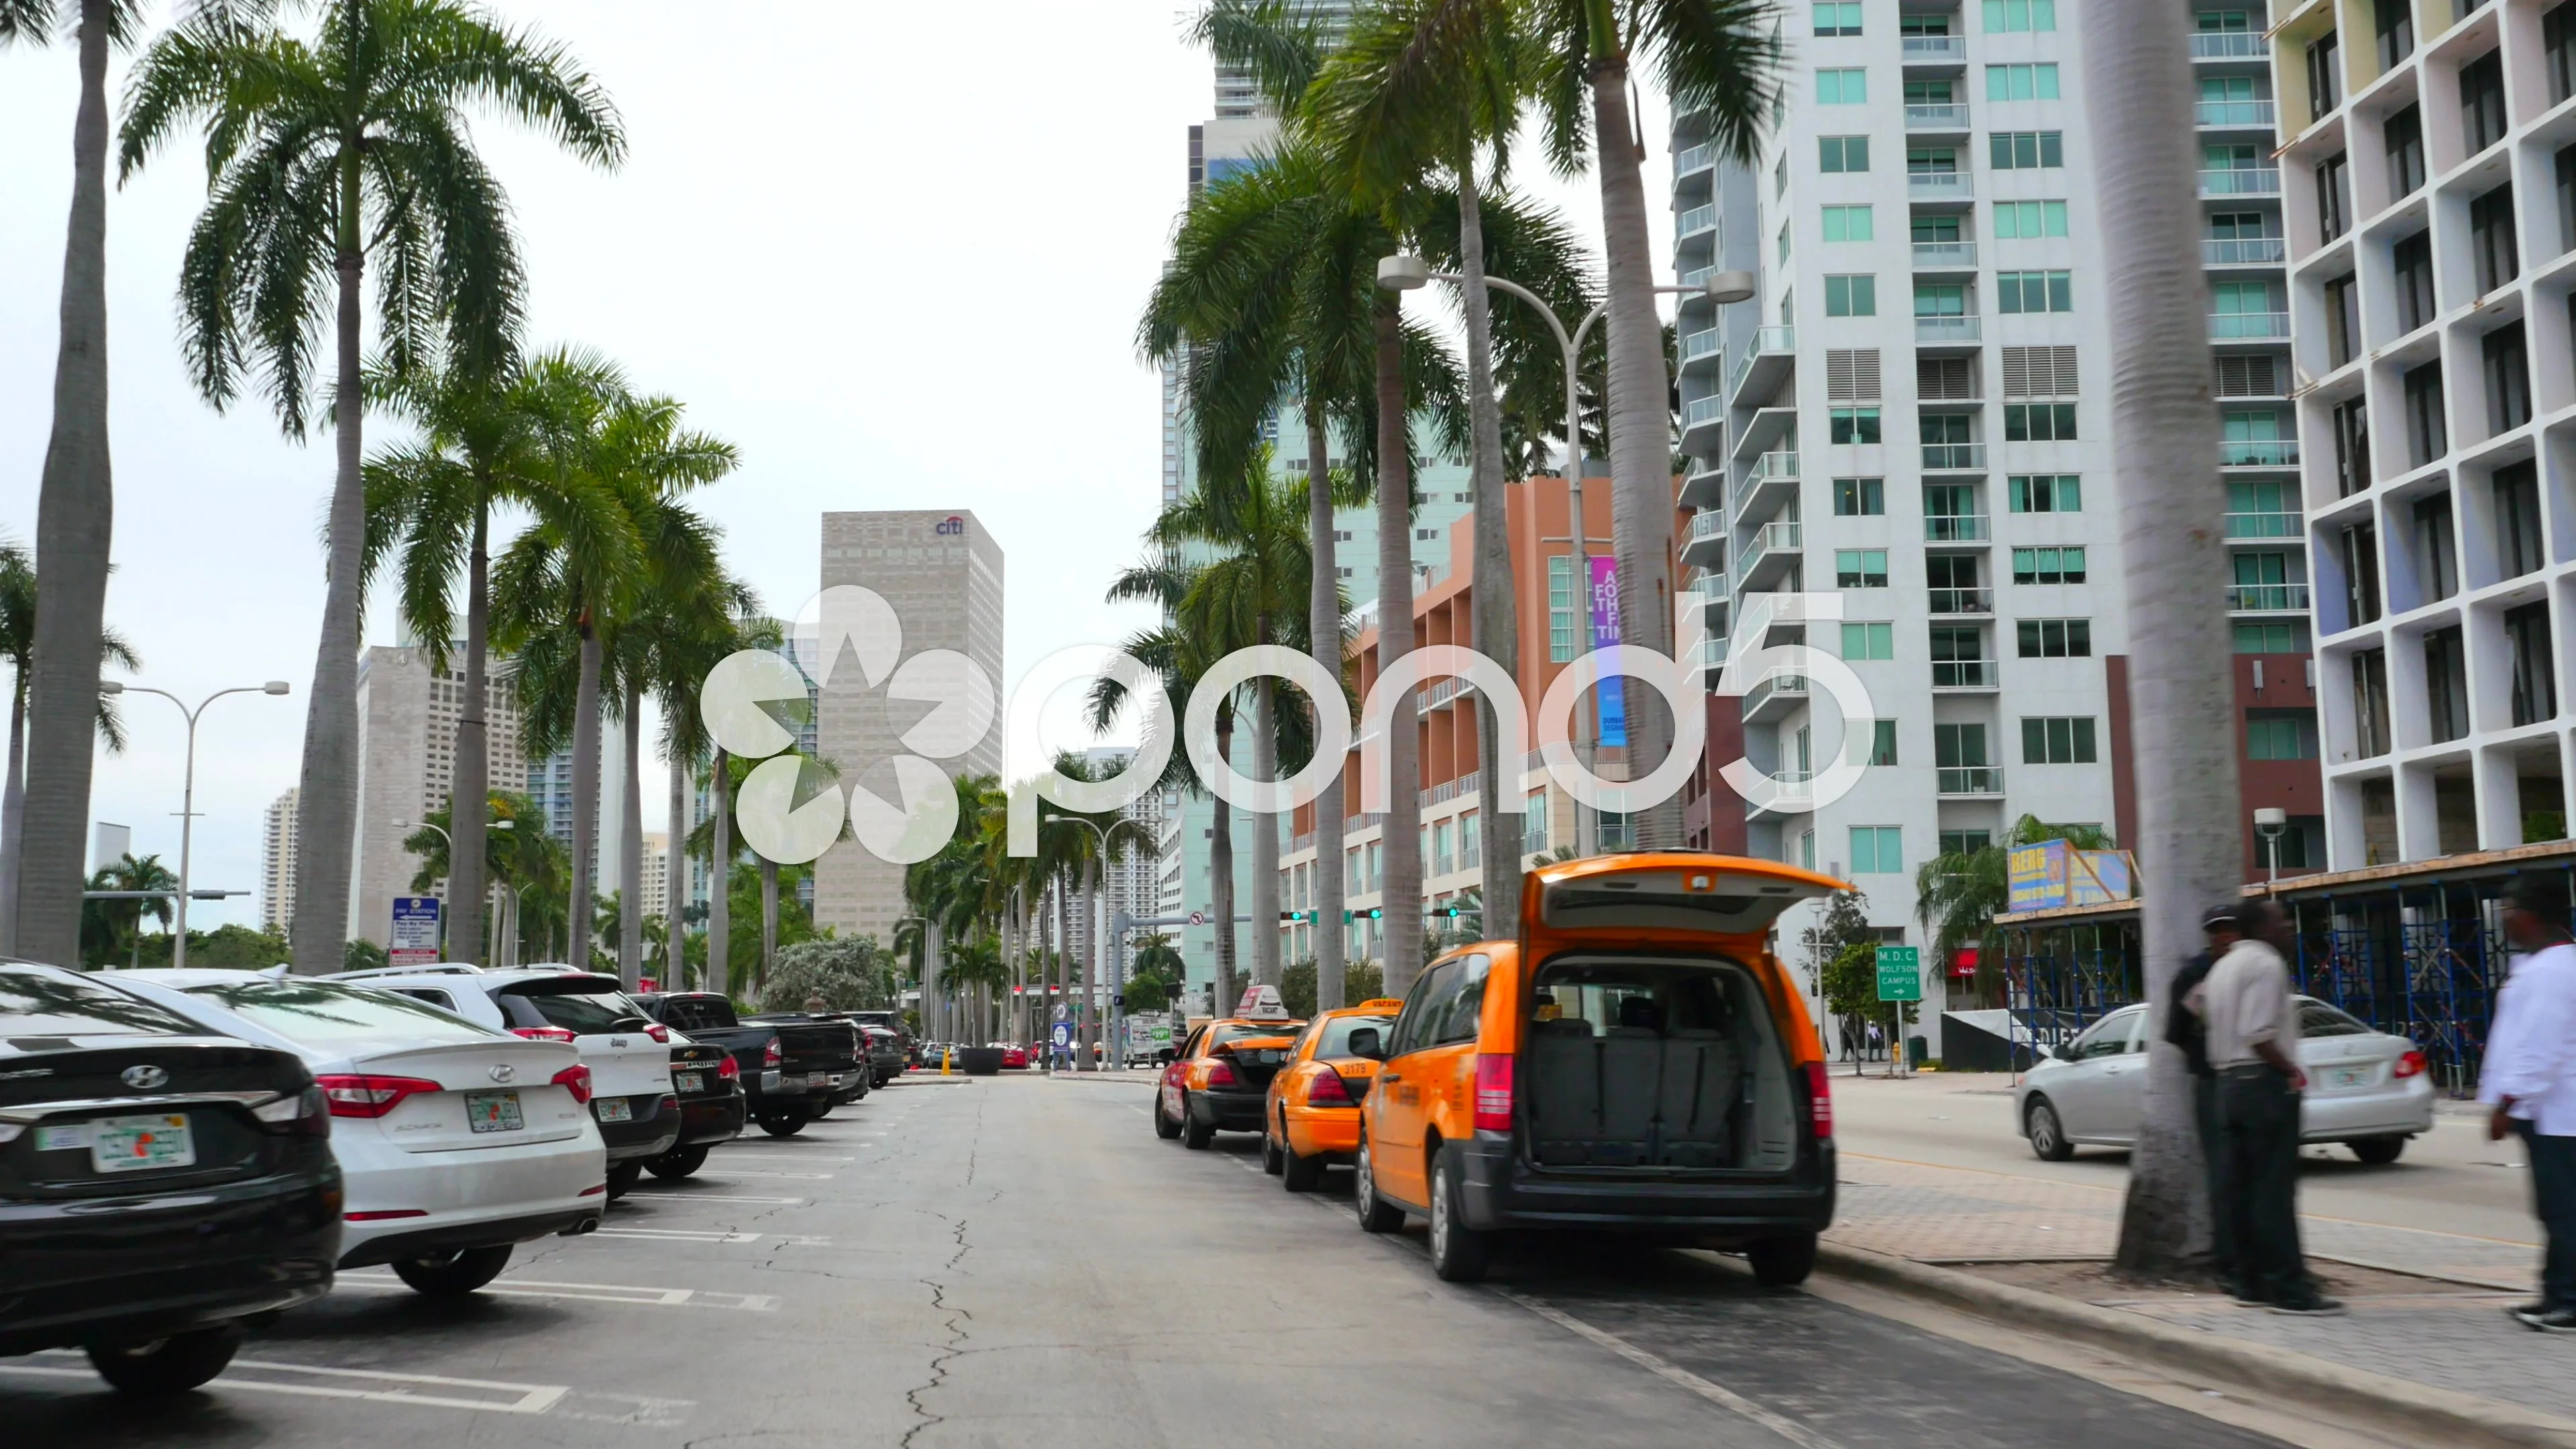 Downtown Miami Parking